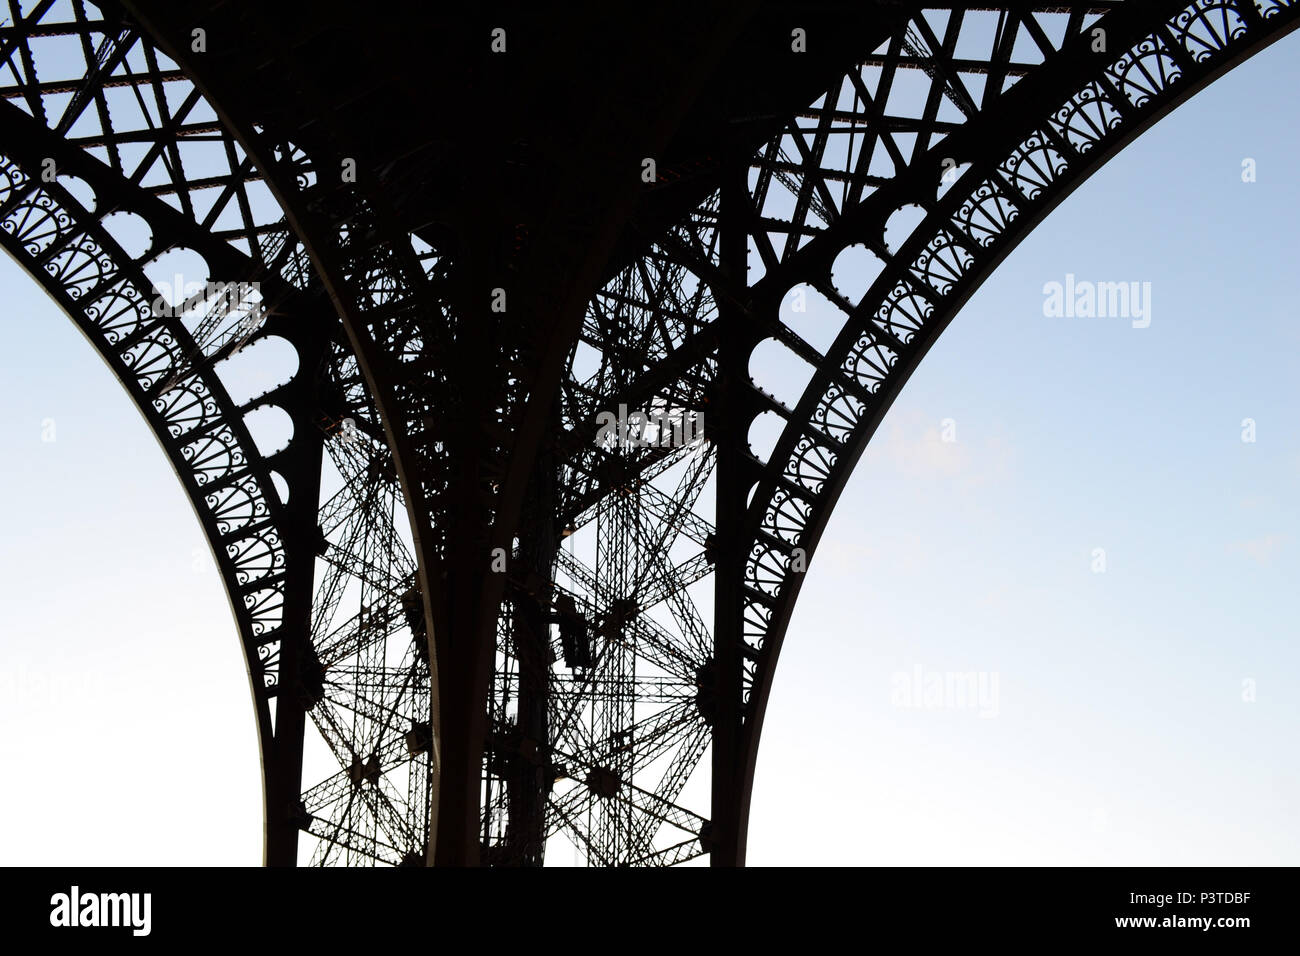 PARIS, FRANÇA - 16.10.2013: PARIS - Contraluz. Detalhe da estrutura da Torre Eiffel. (Foto: Fontana / Fotoarena) Stock Photo